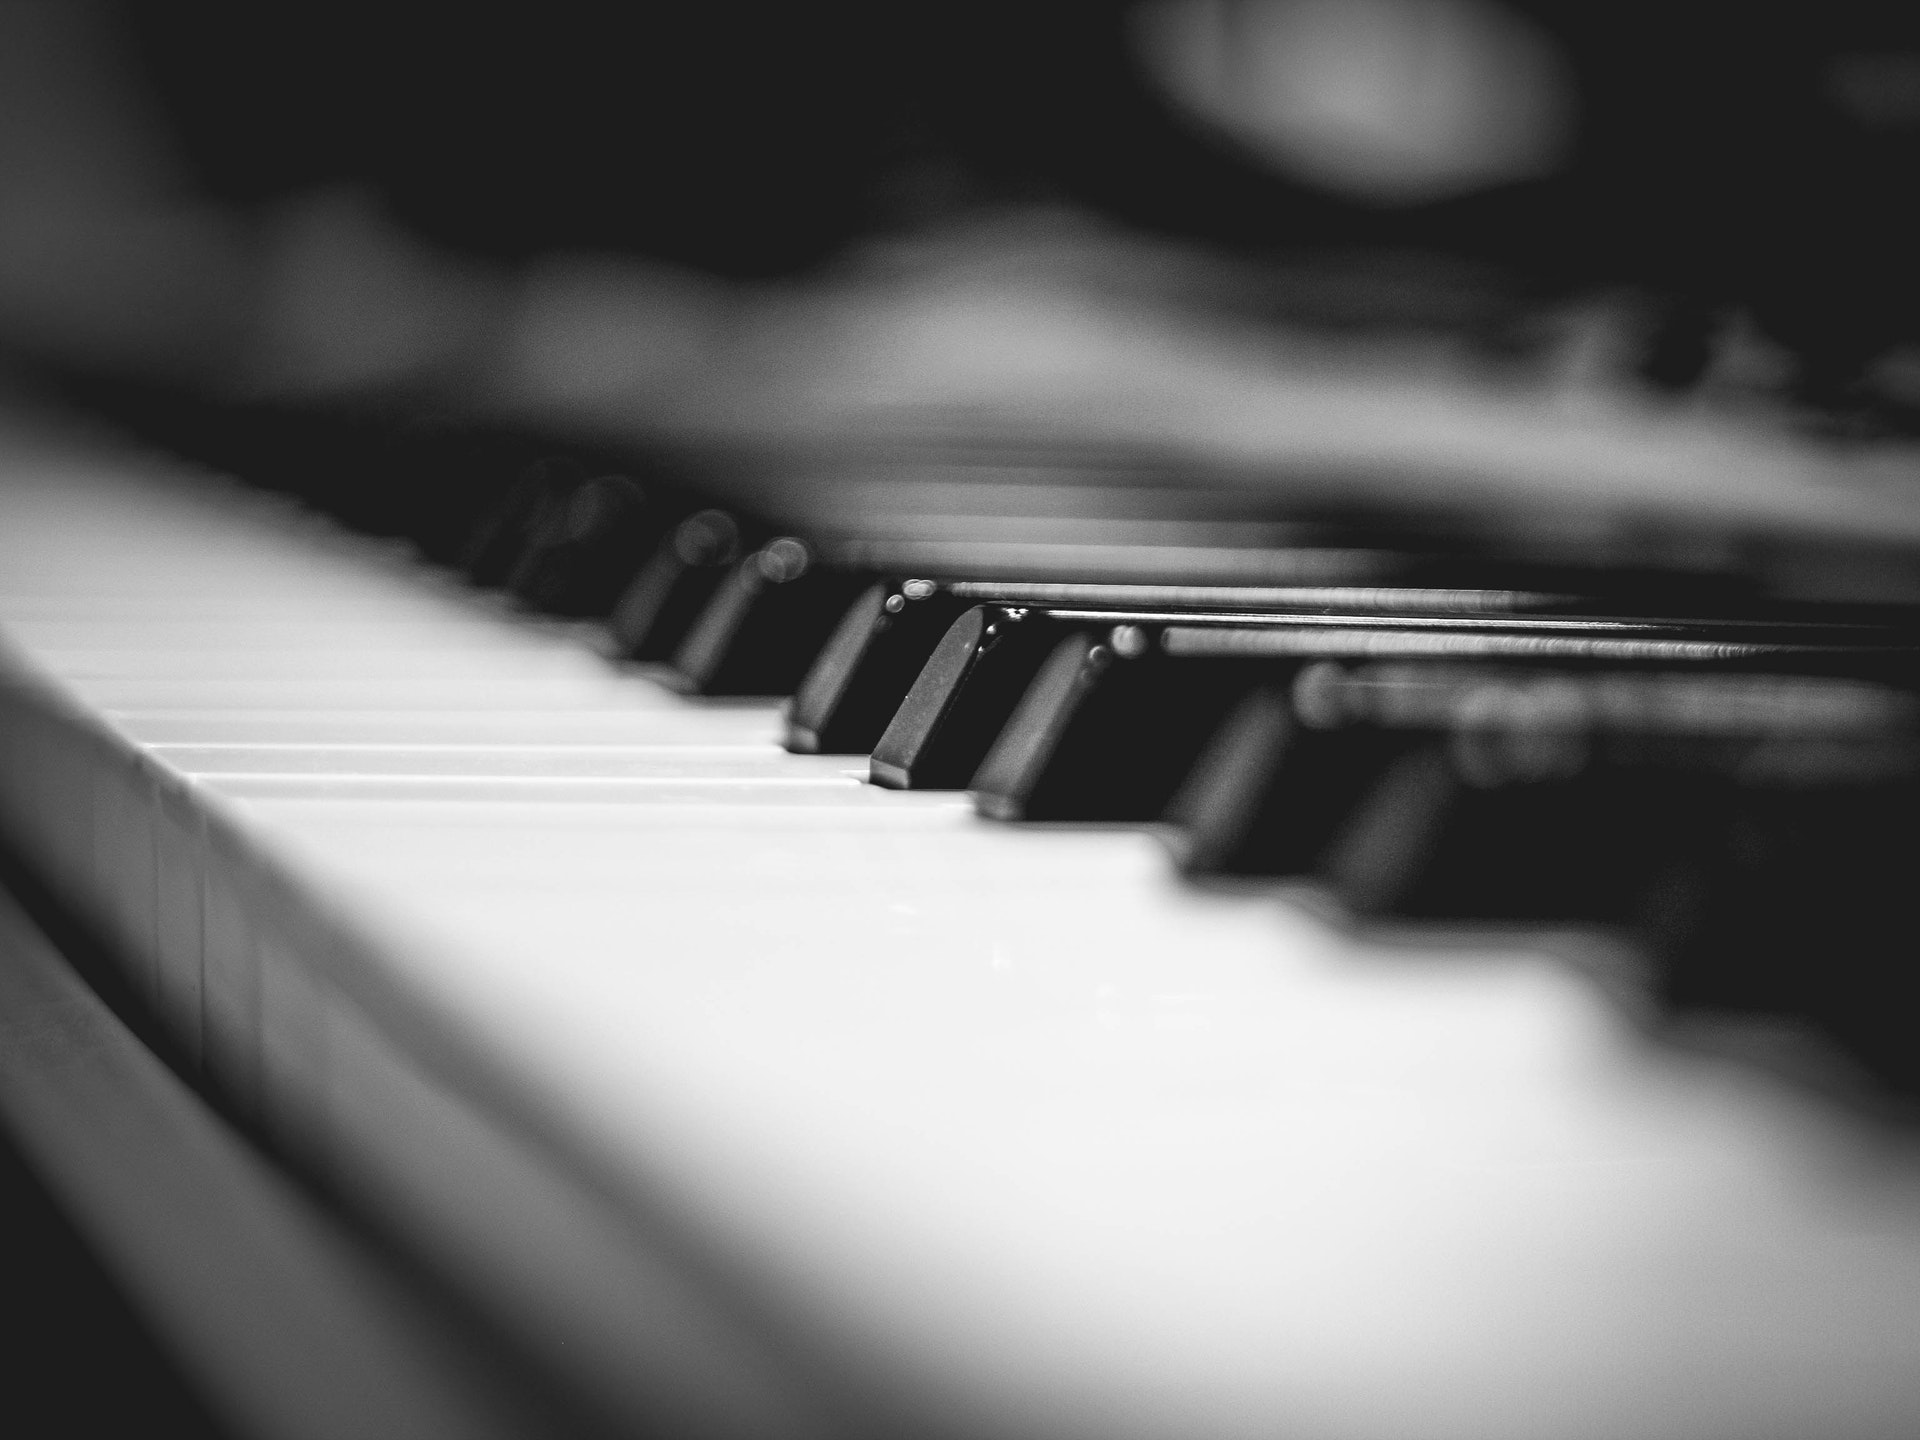 a piano